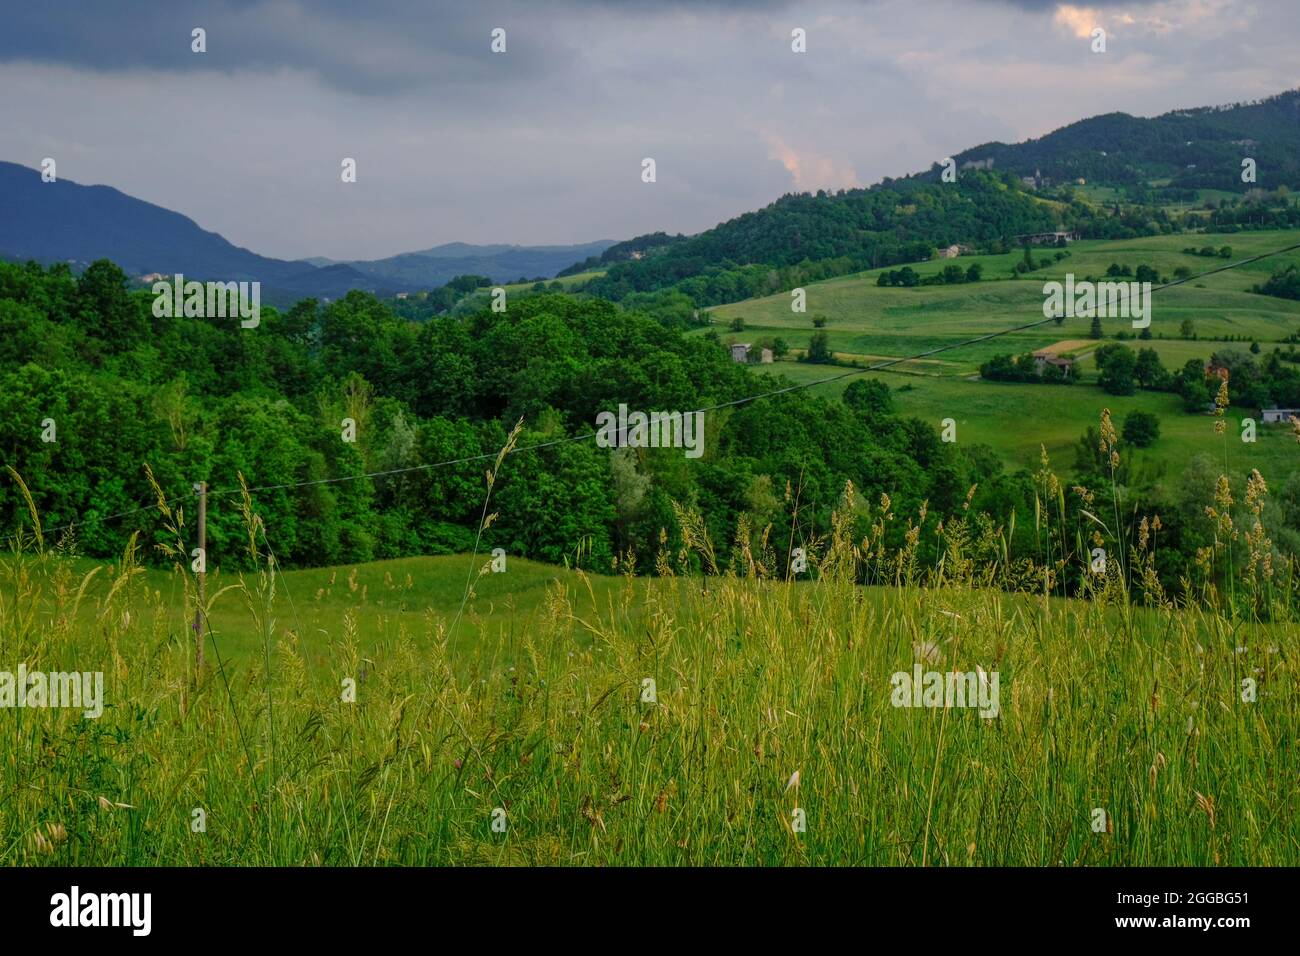 Landschaft mit Gras und Bergen. Wilde Pflanzen über den Bergen, ländliche Aussicht, dramatischer Himmel. Ländlicher Hintergrund Stockfoto